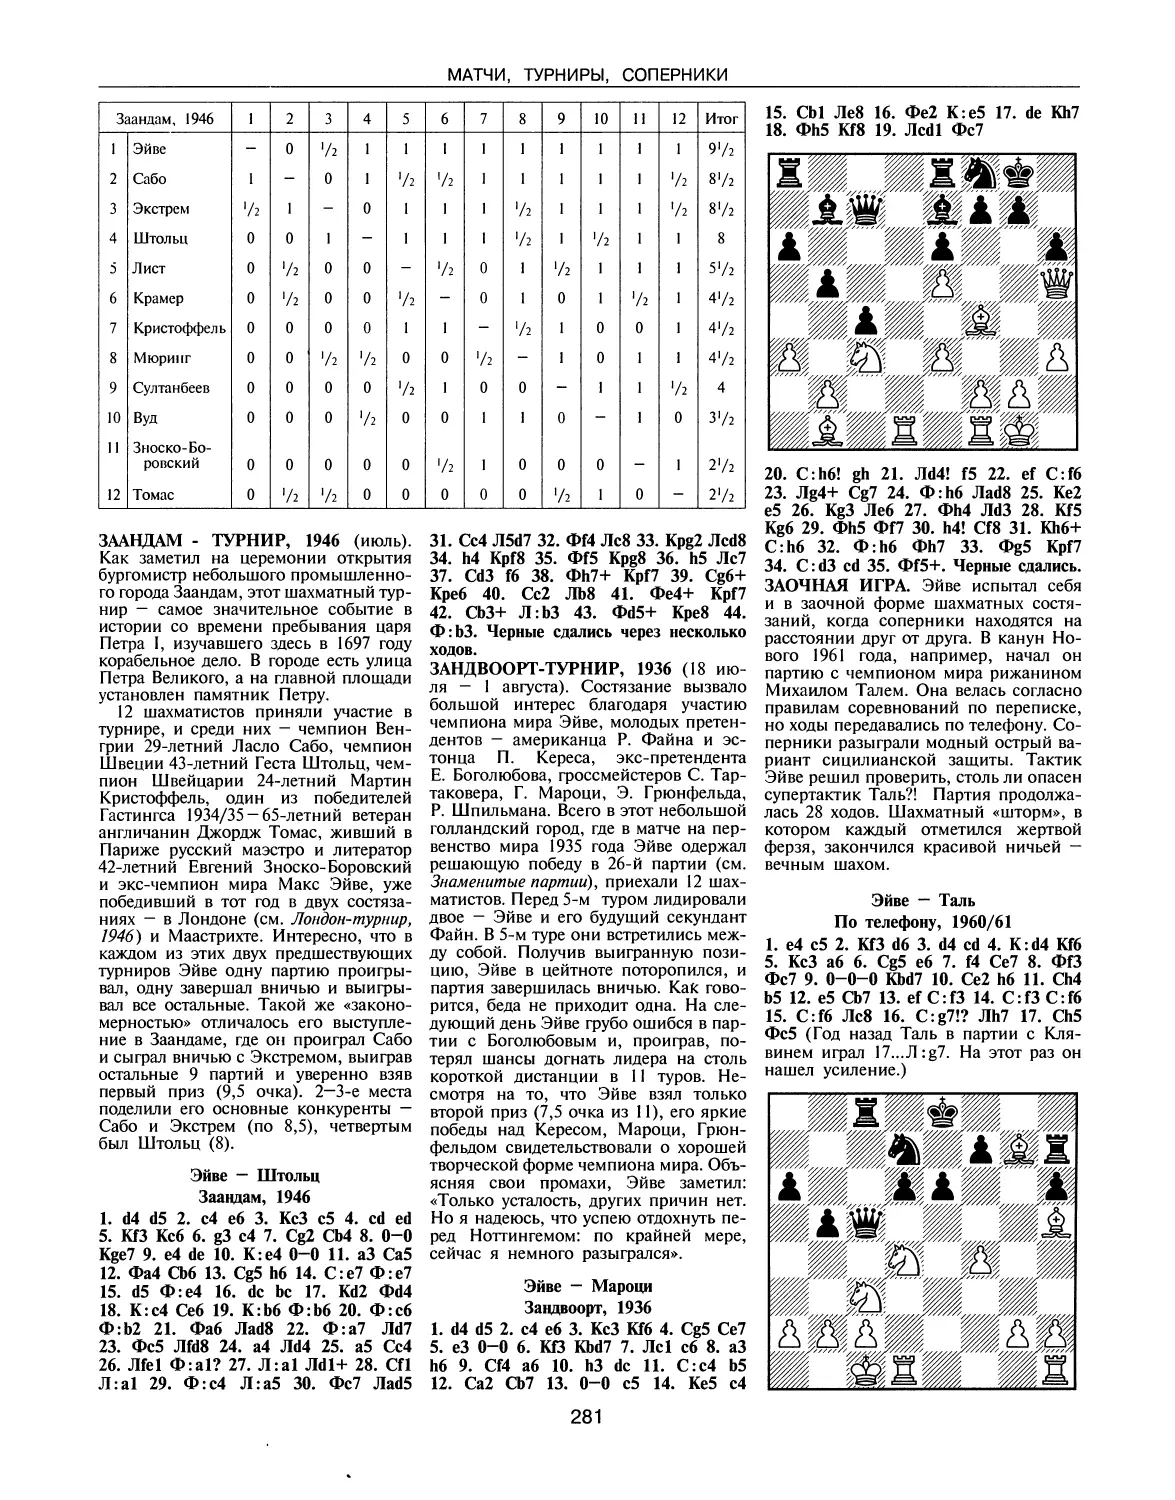 Заандам-турнир, 1946
Зандвоорт-турнир, 1936
Заочная игра